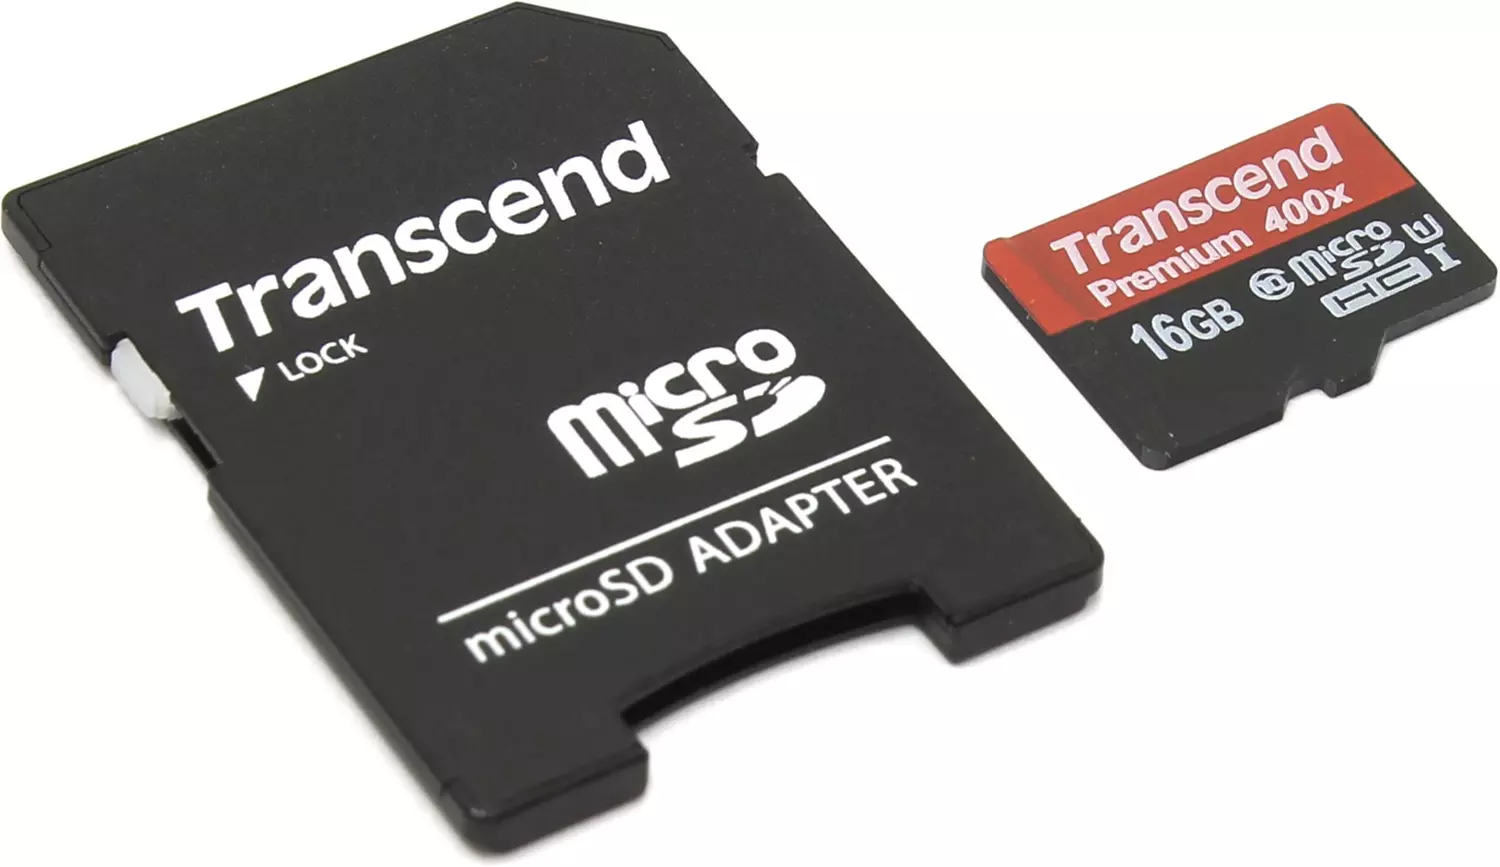 Microsdhc 16gb. SD карта Transcend 16gb. Карта памяти MICROSDHC 16 ГБ class 10 Transcend. Transcend 128gb MICROSDXC. Карта памяти MICROSDHC 16gb Transcend (ts16gusdhc10u1) UHS-I class 1 + адаптер на SD.